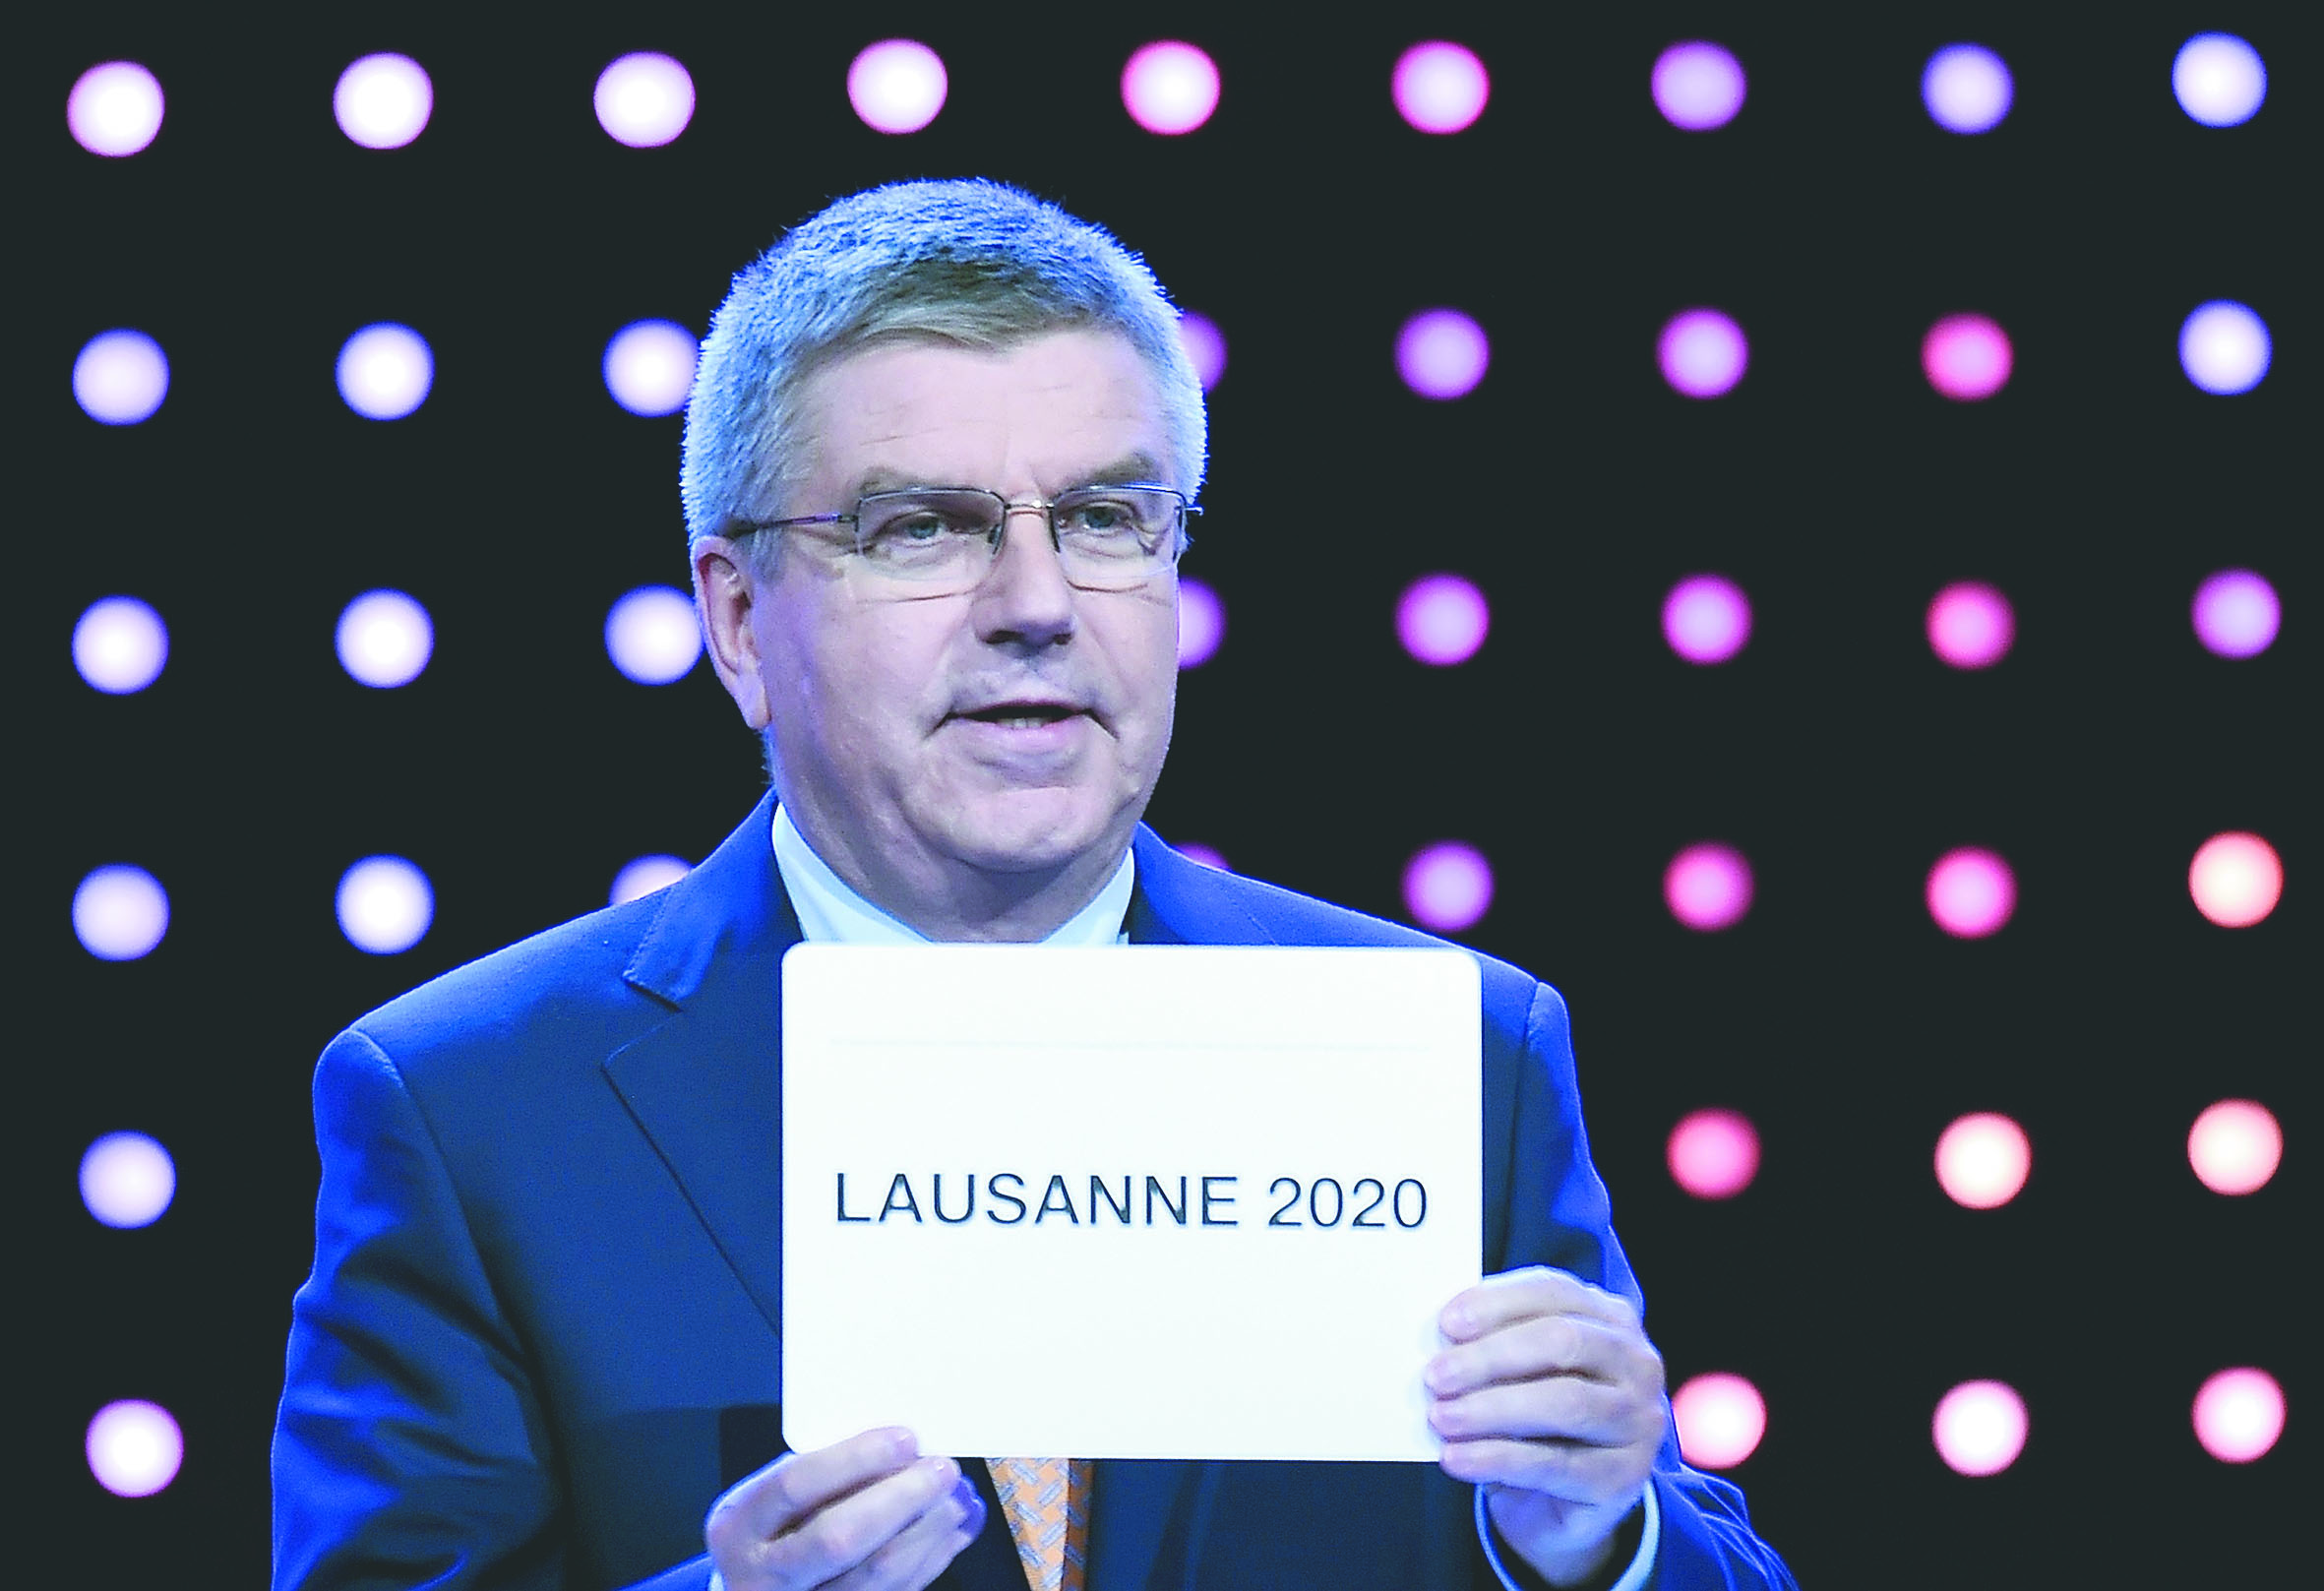 Thomas Bach : Les problèmes ne passeront  pas seulement avec un nouveau président de la FIFA